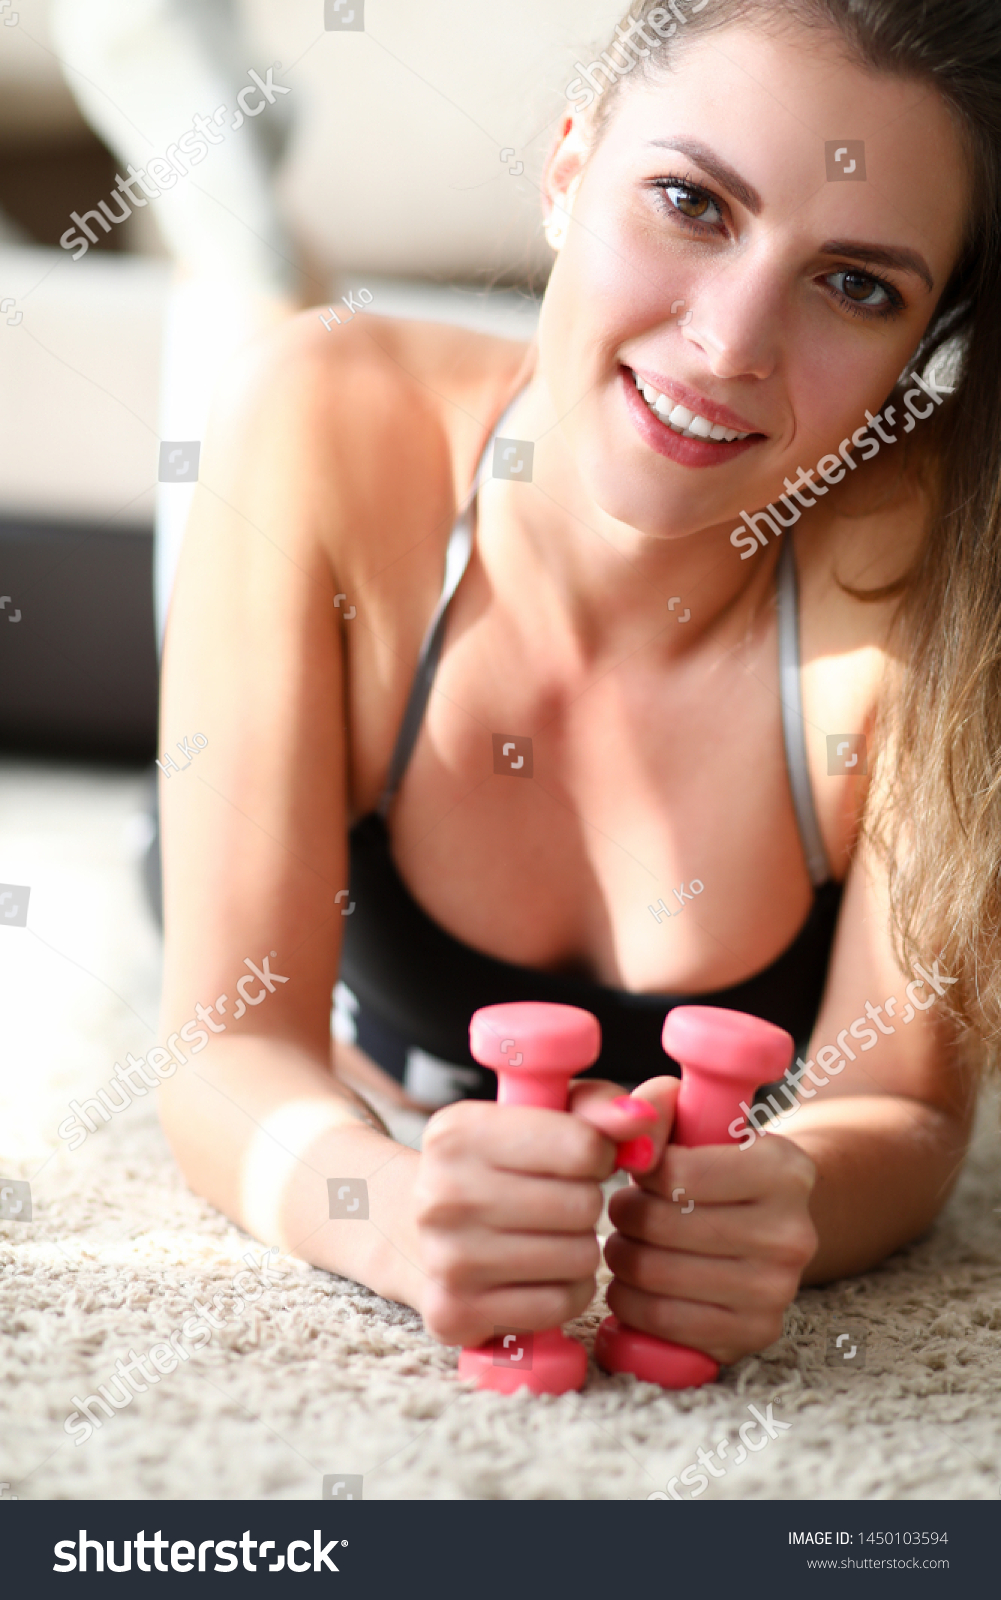 Real teen girls self pics-nude photos